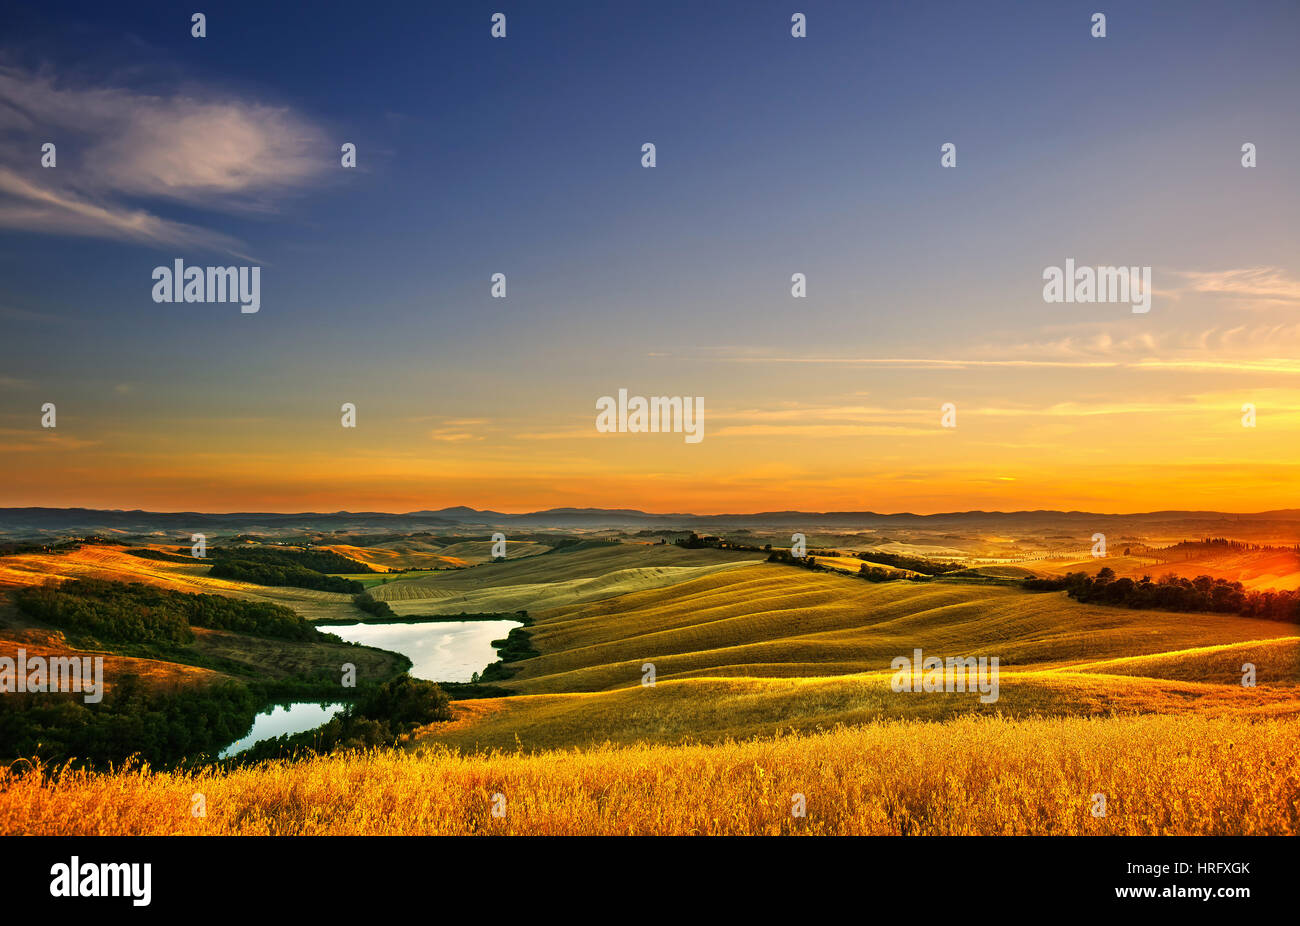 La toscane, paysage des crete senesi près de Siena, Italie, Europe. Petit lac, vert et jaune des champs, ciel bleu avec des nuages. Banque D'Images